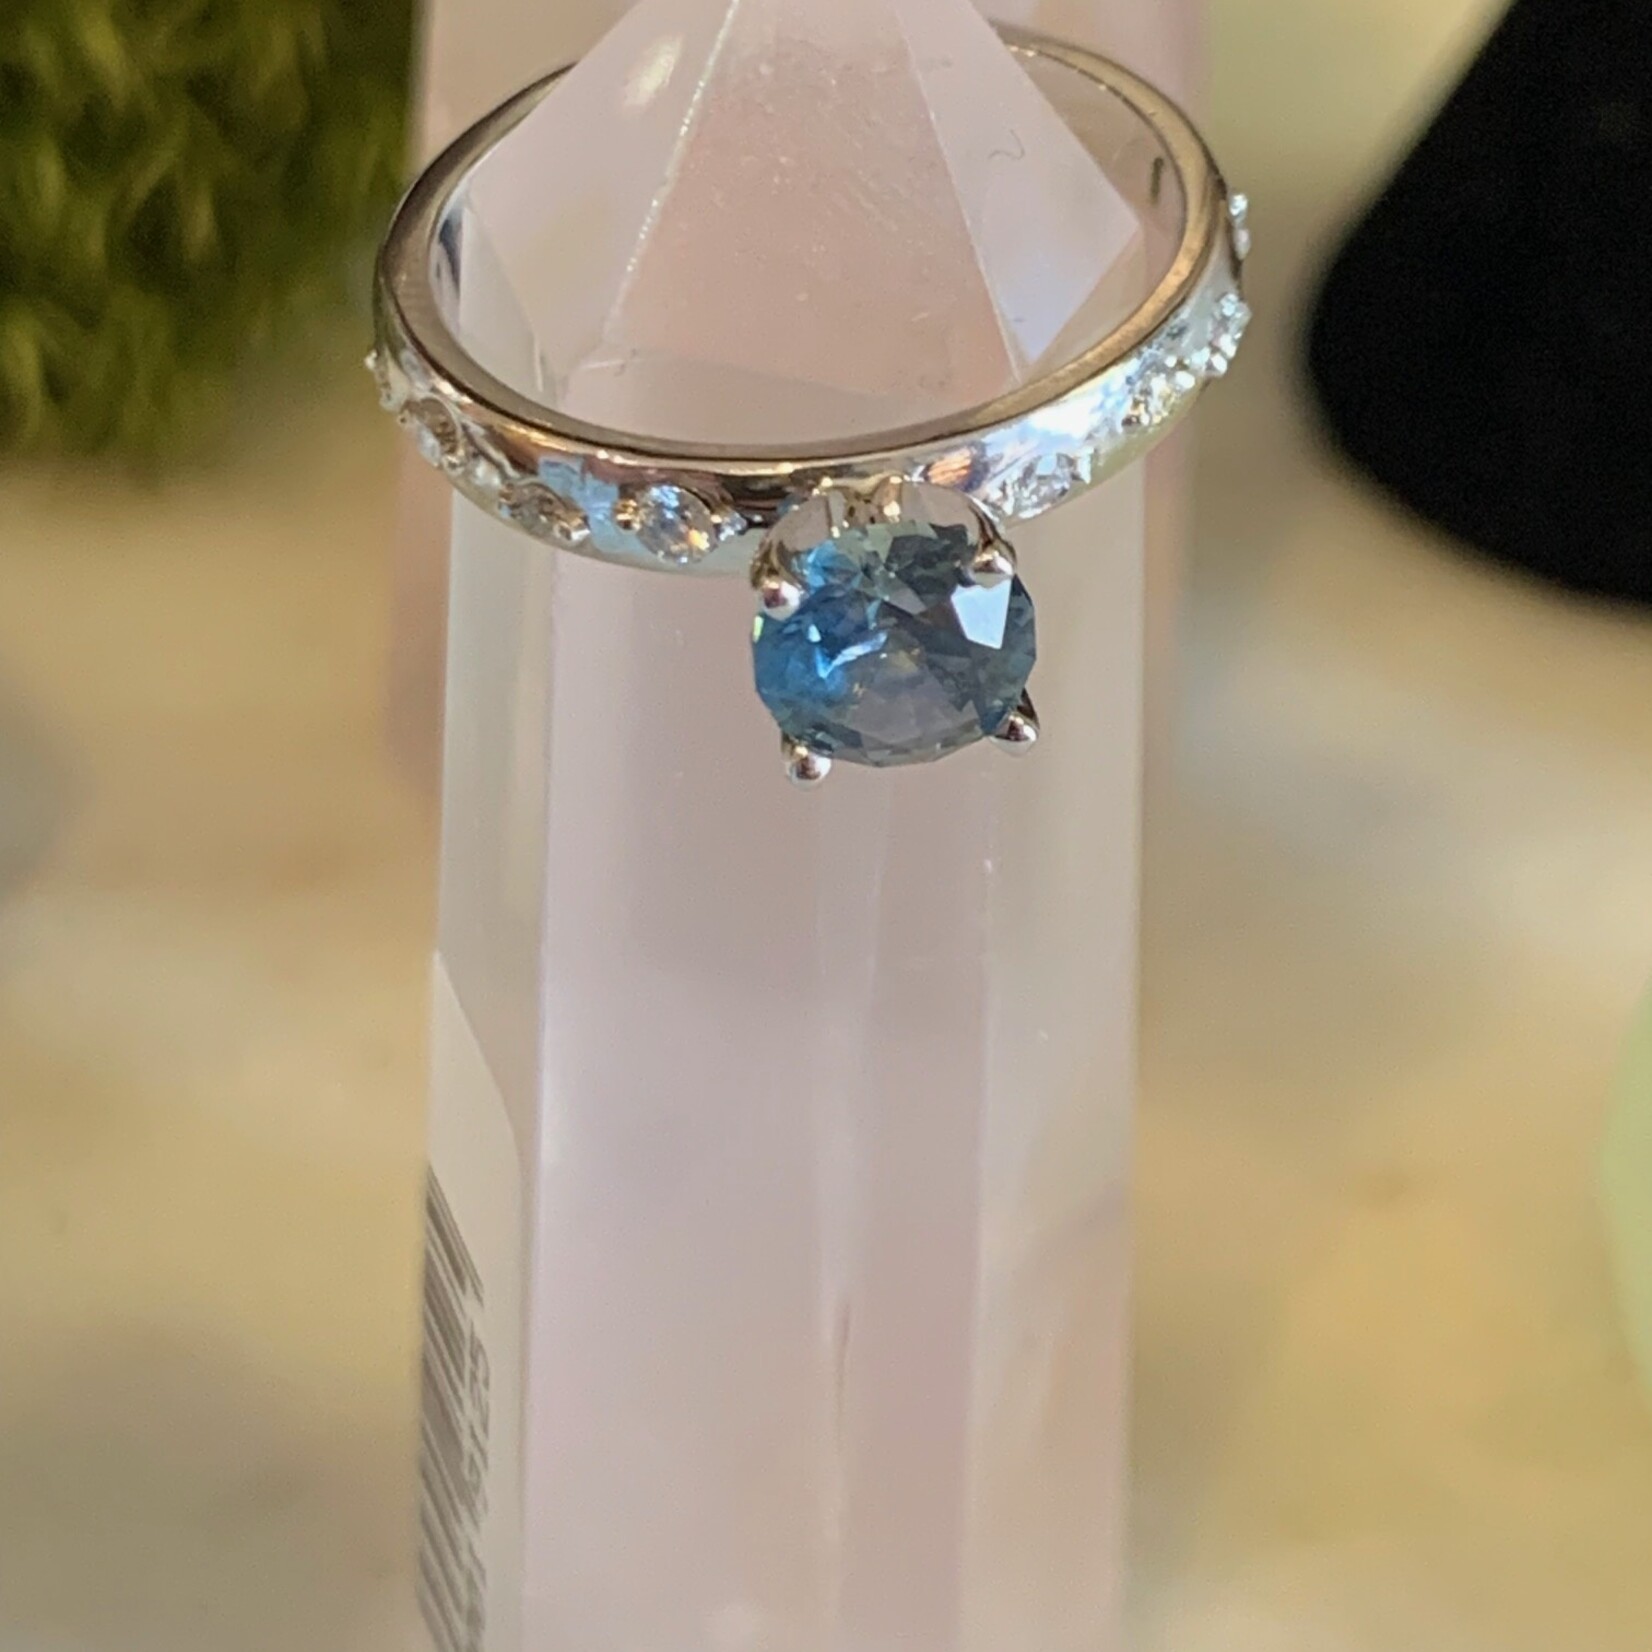 Efron Designs 10K White Gold Montana Sapphire + Diamond Ring Size 6.5